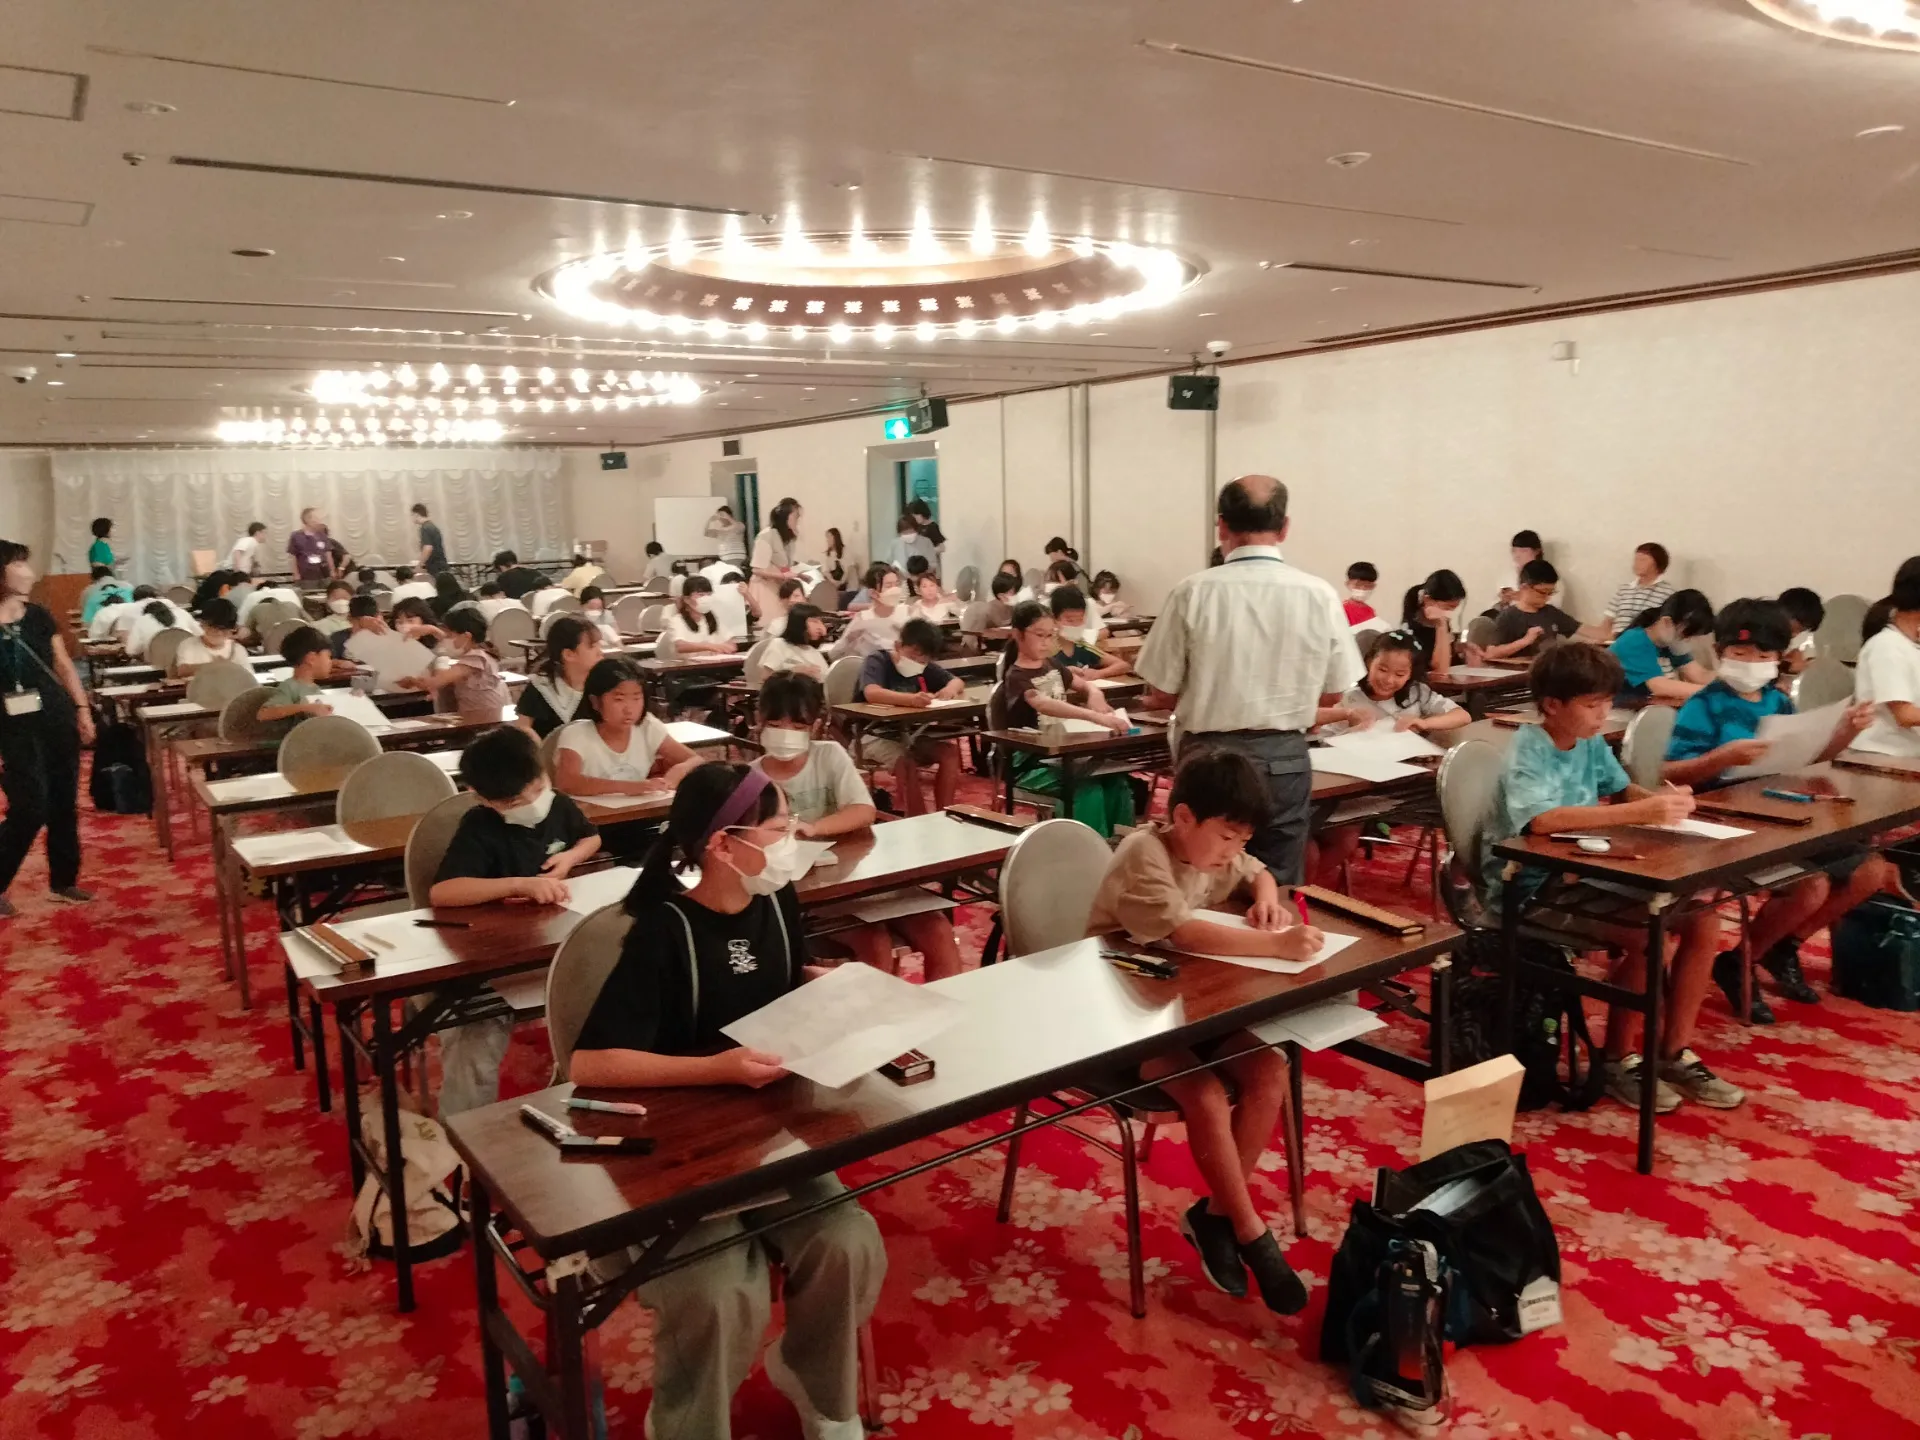 【珠算教室】夏休みセミ合宿参加してきました。